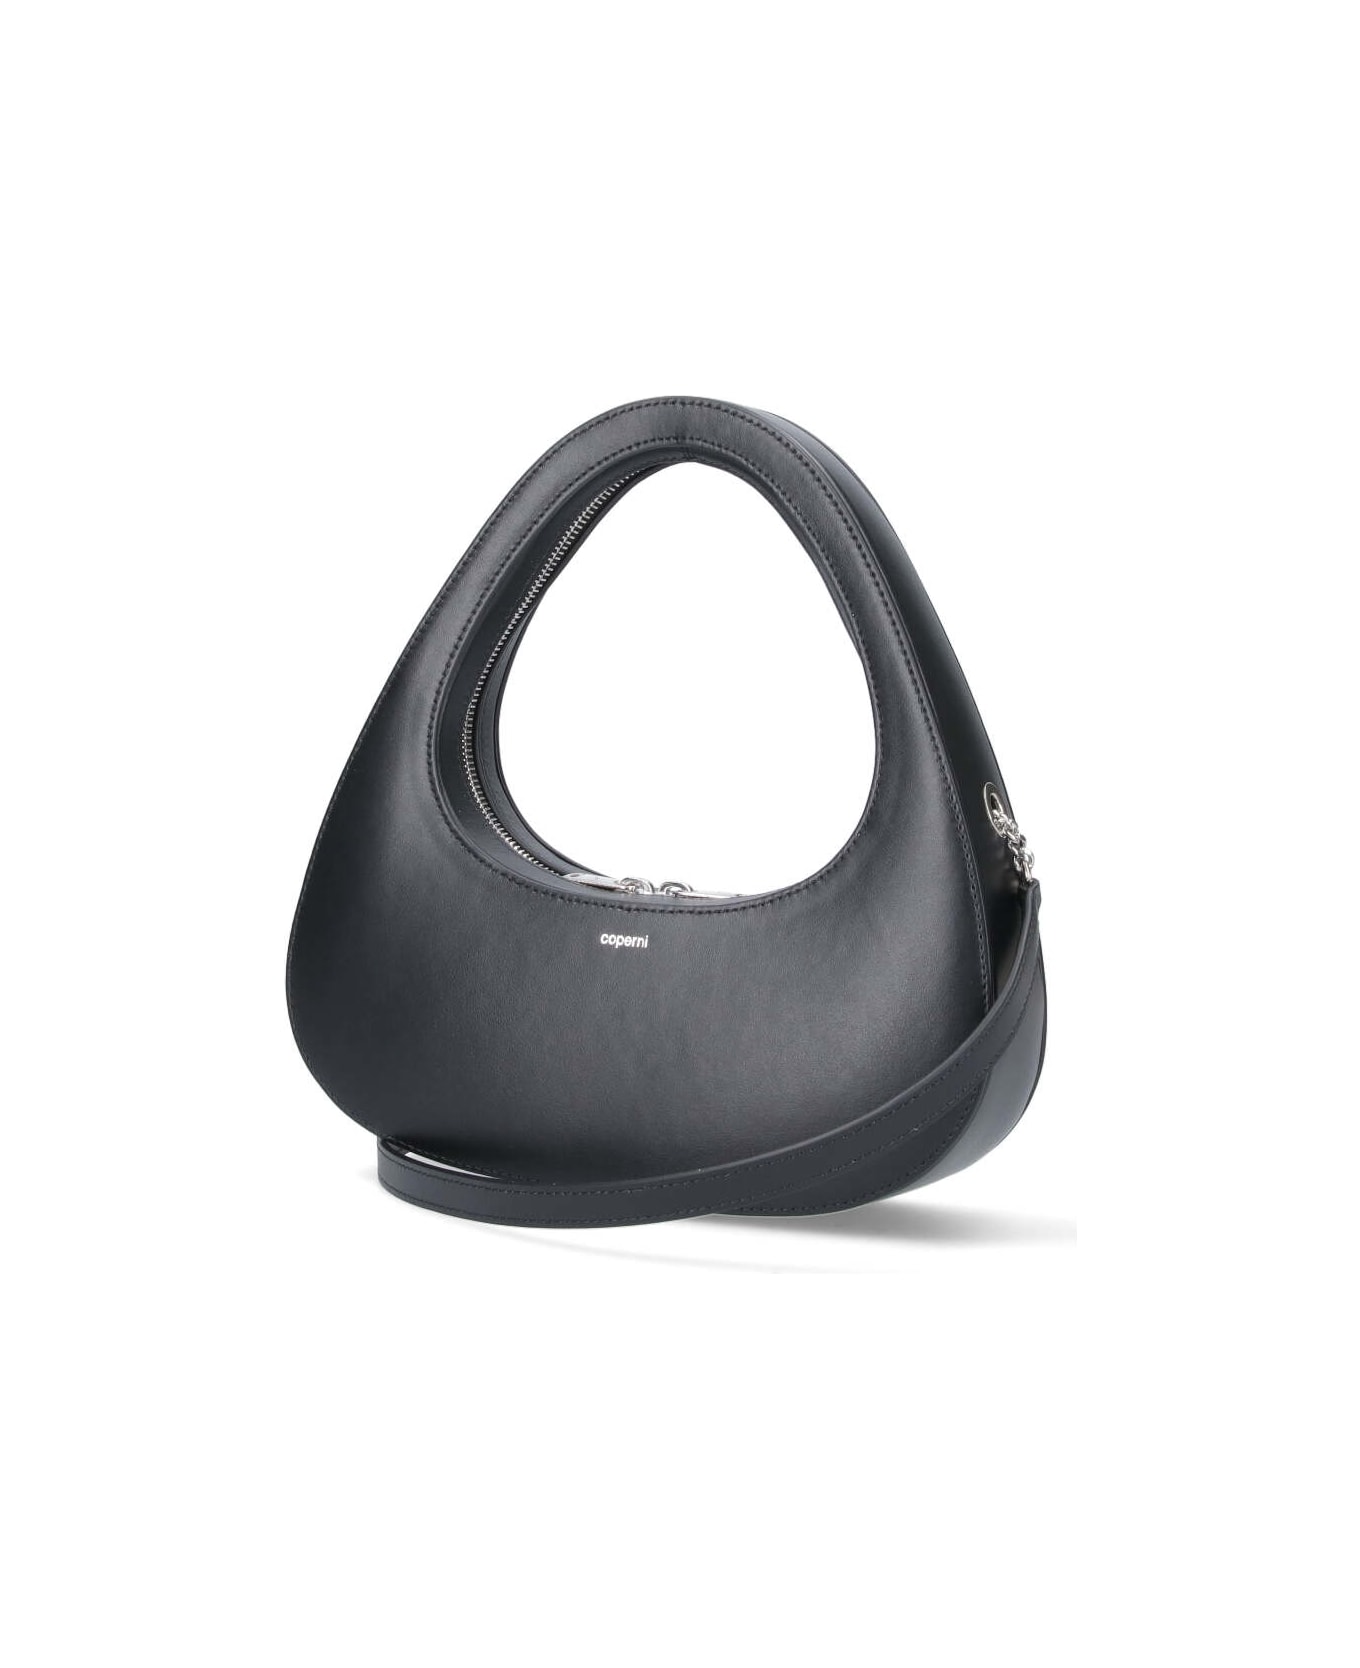 Coperni 'baguette Swipe' Handbag - Black ショルダーバッグ